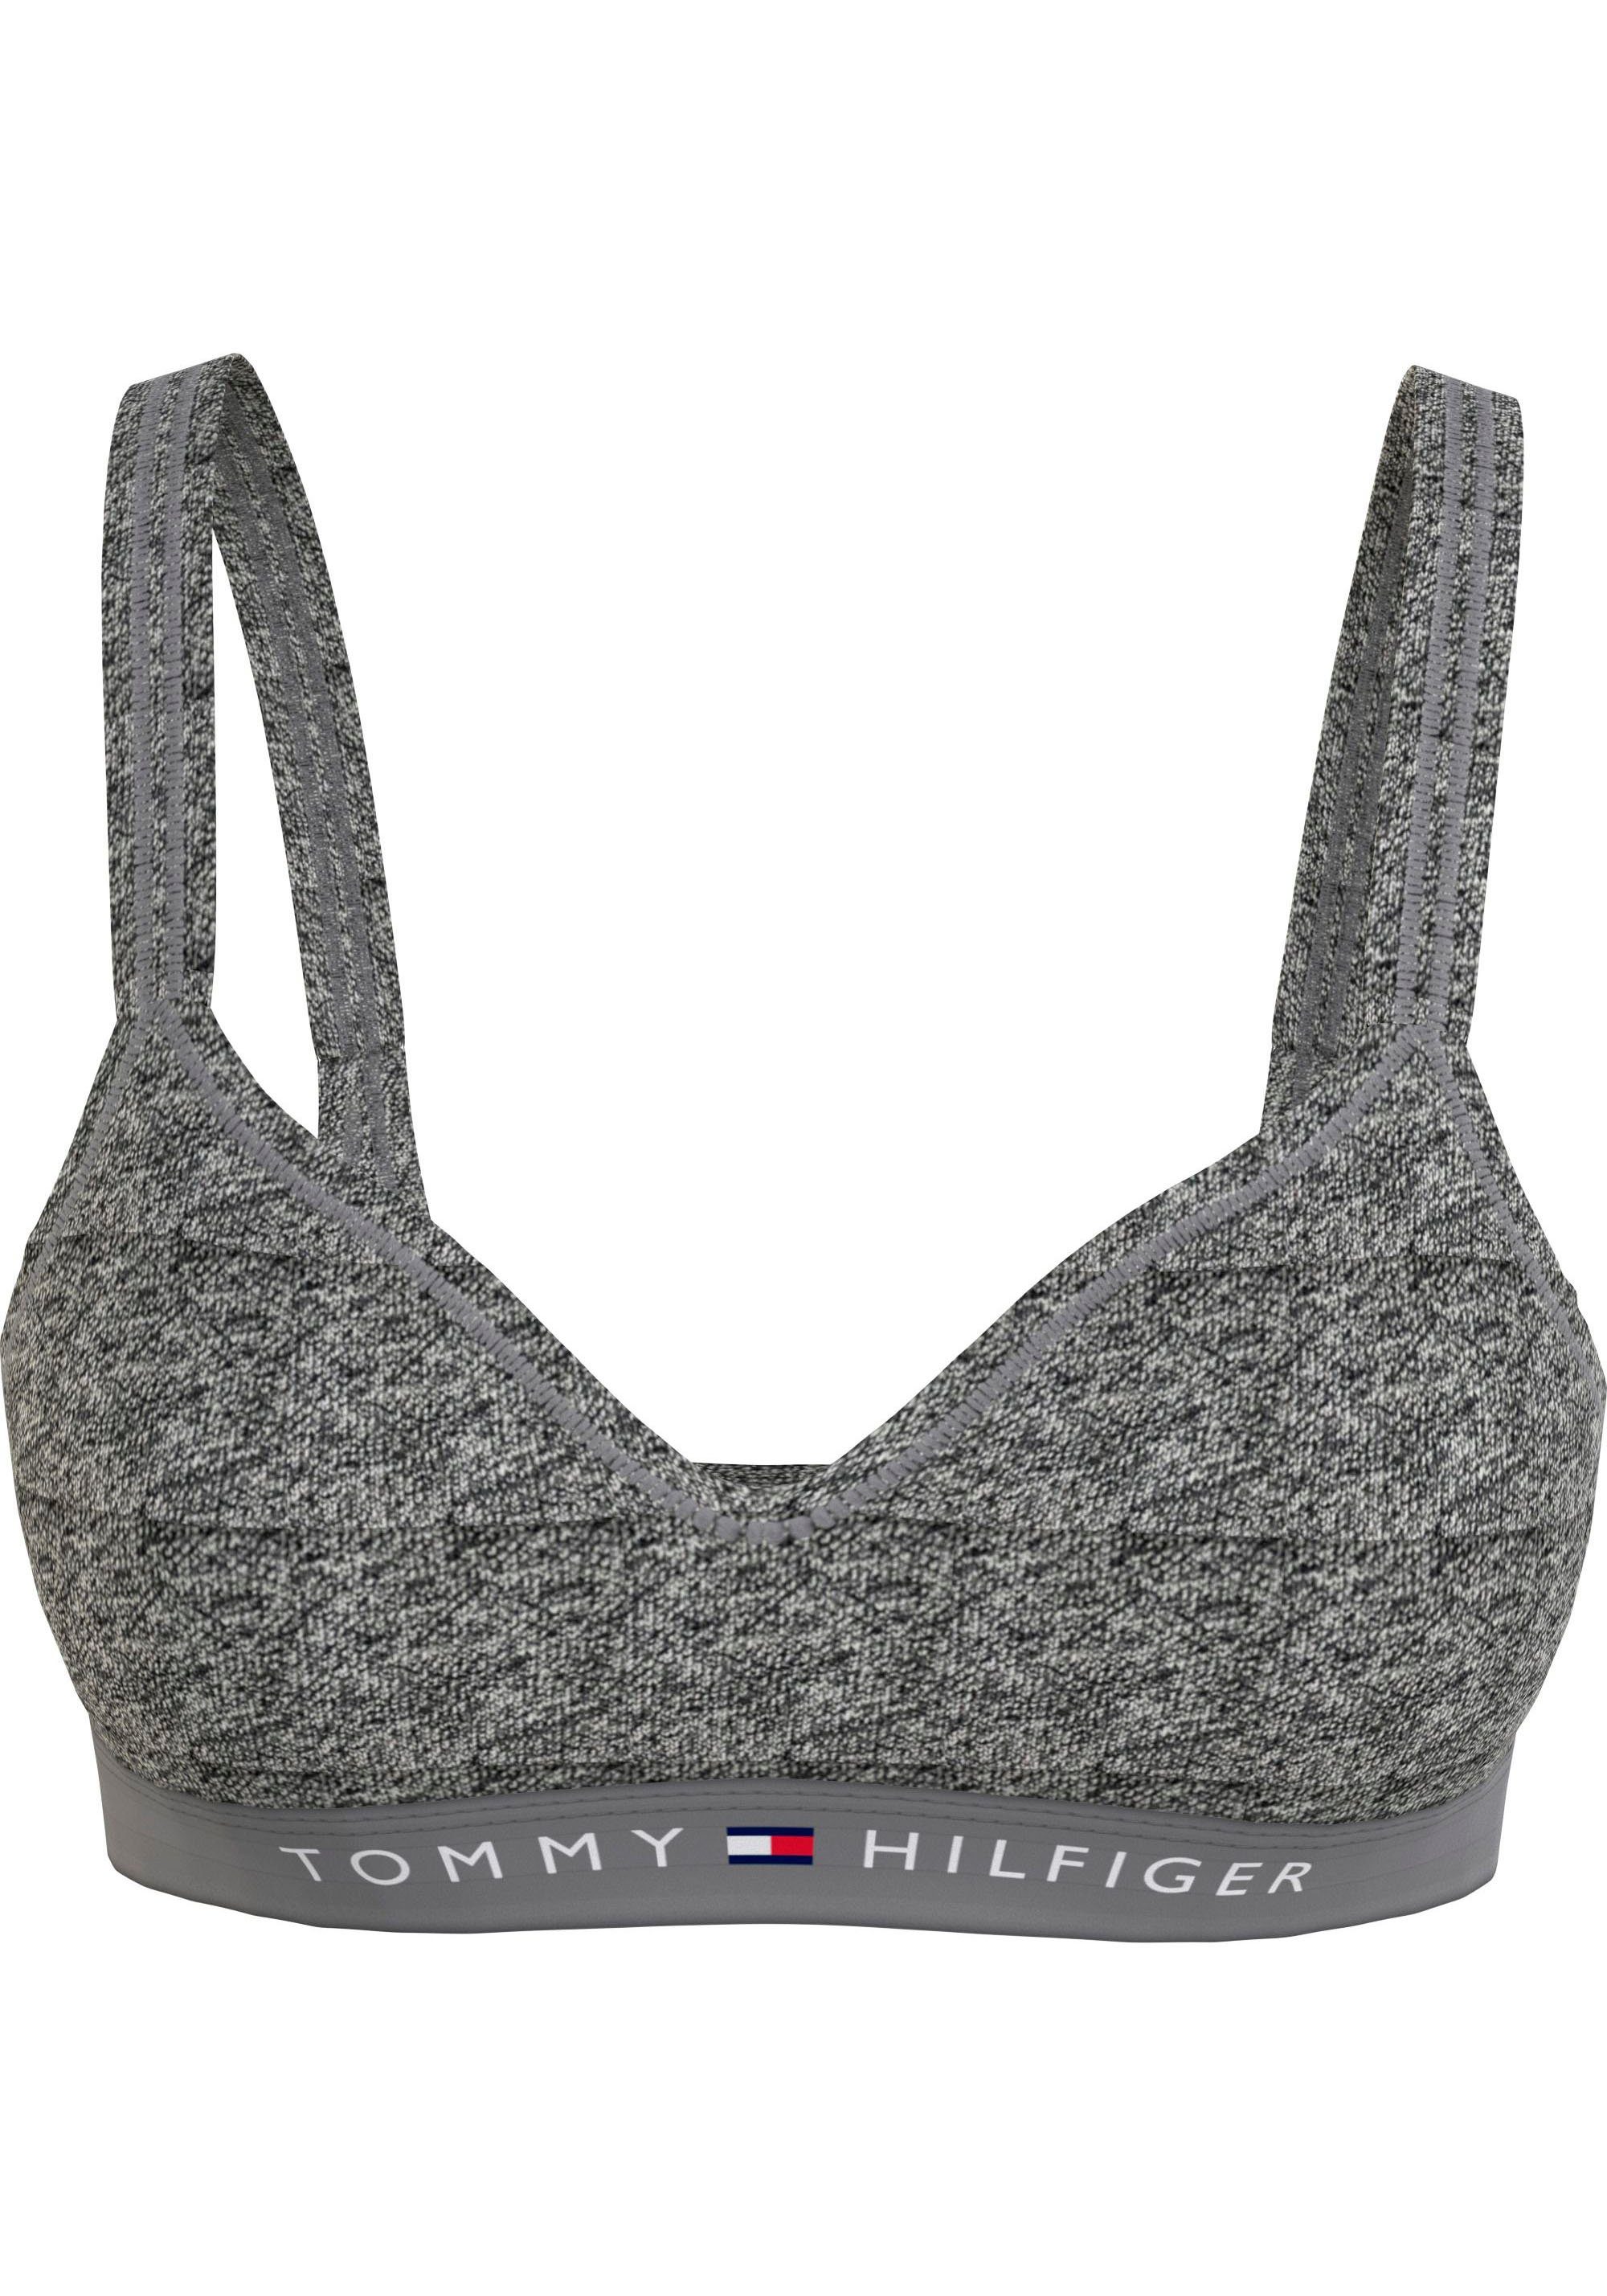 LIFT Tommy modischem Underwear (EXT Dark_Grey_Ht Hilfiger SIZES) BRALETTE Logobund mit Bralette-BH